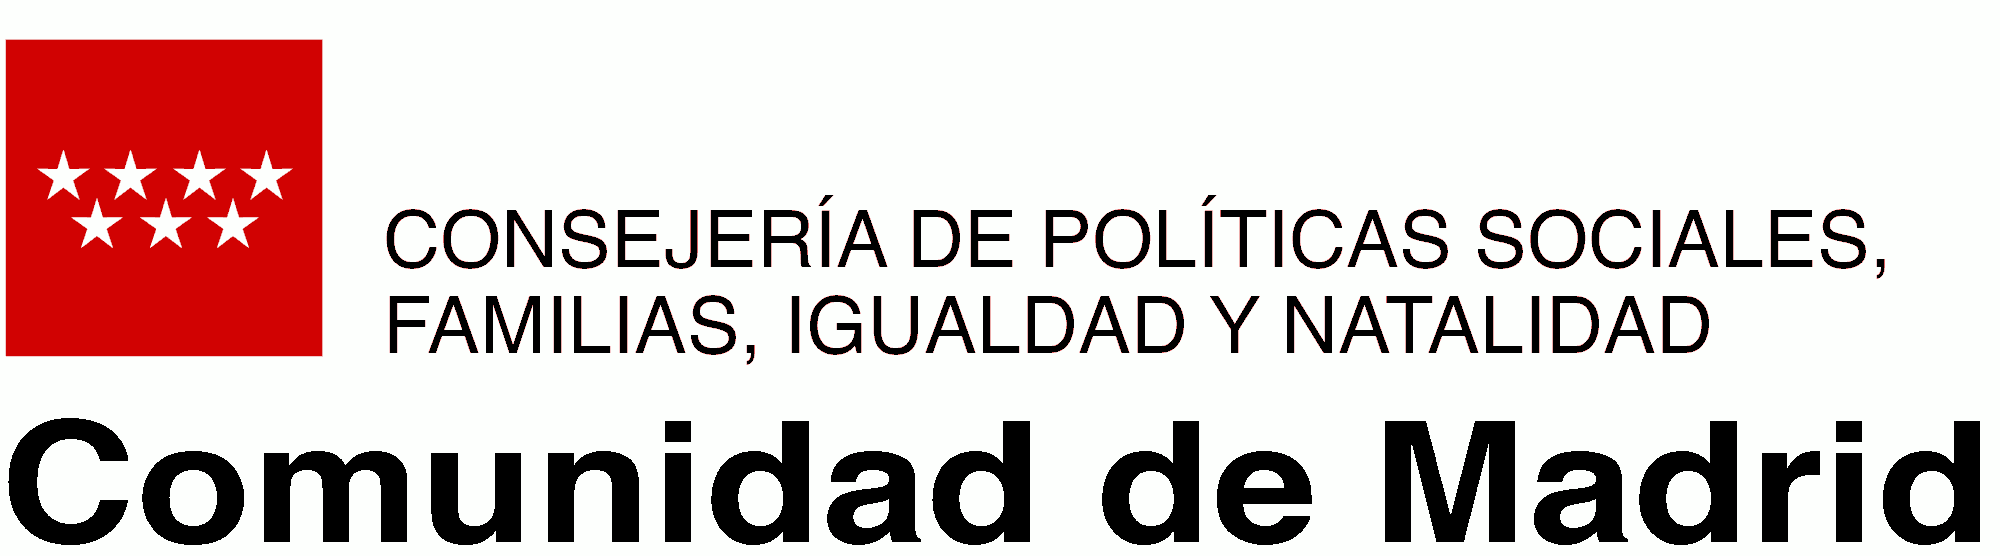 Logo Consejería de políticas sociales, familias, igualdad y natalidad Comunidad de Madrid